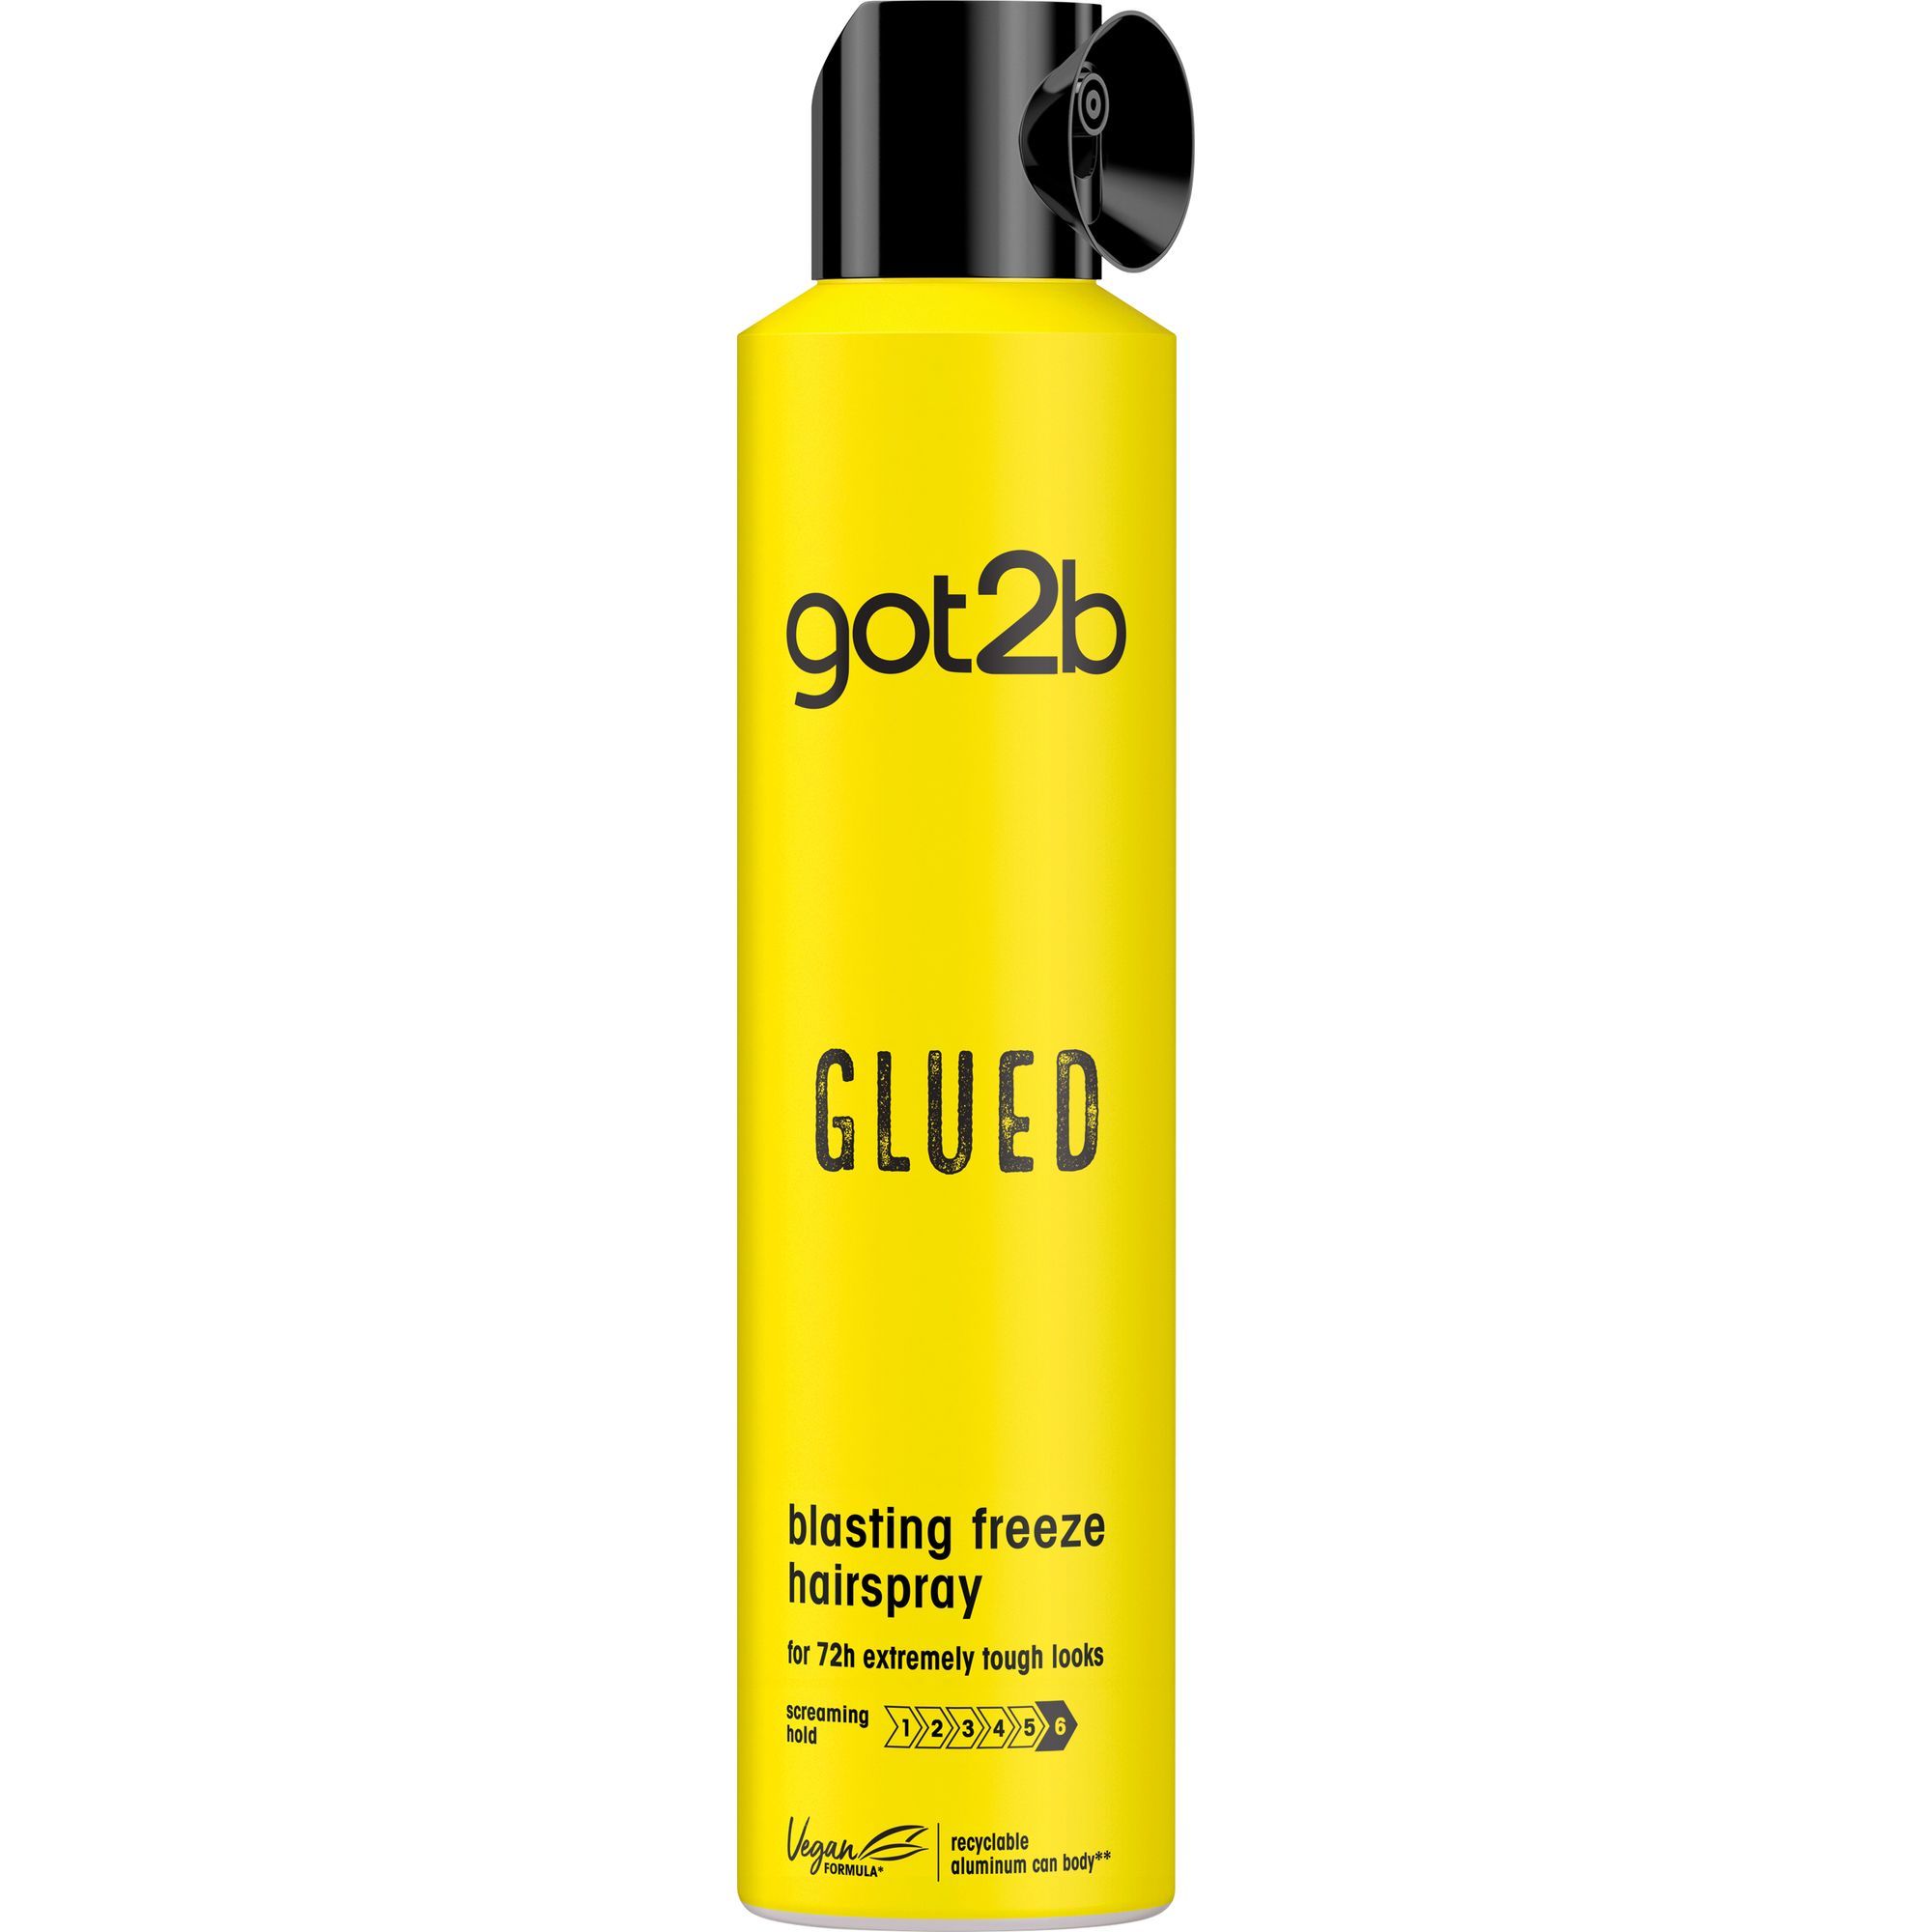 Henkel Beauty Spray Μαλλιών Glued Freeze Got2b (300ml)